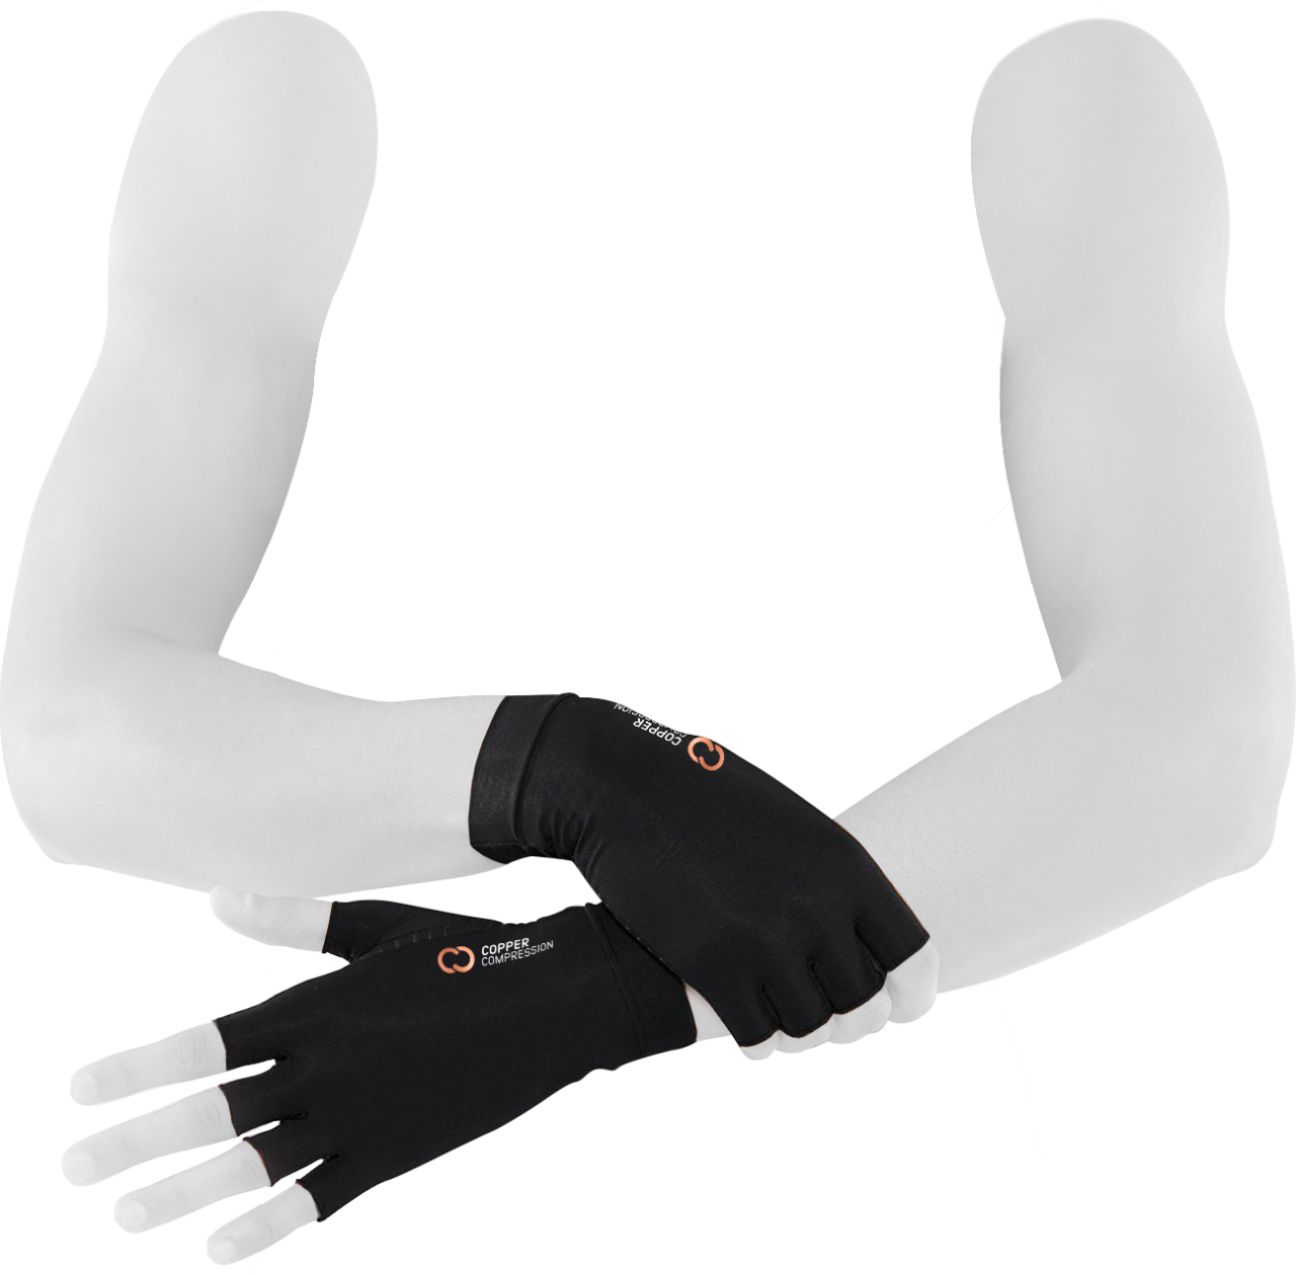 Tablecraft High Heat Glove, 13-3/4 x 6 x 2-1/4, black glove, red cuff,  (pair of 2)